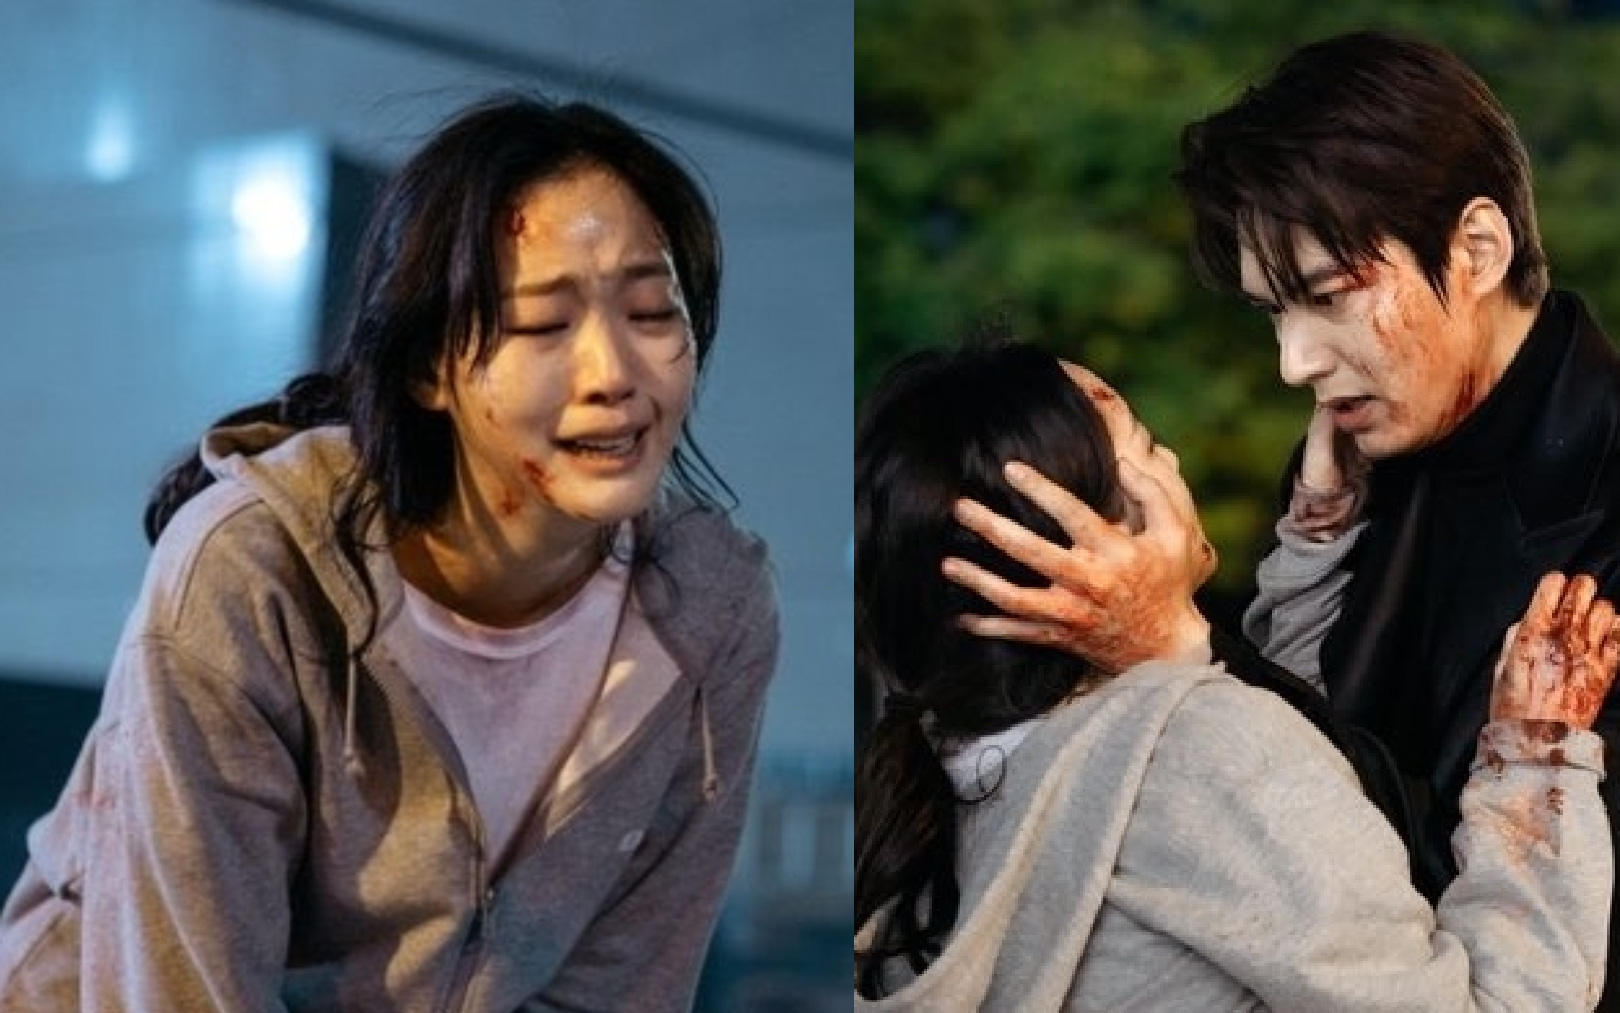 "Quân vương bất diệt" tập 11: Lee Min Ho hóa anh hùng giải cứu Kim Go Eun trong biển máu 